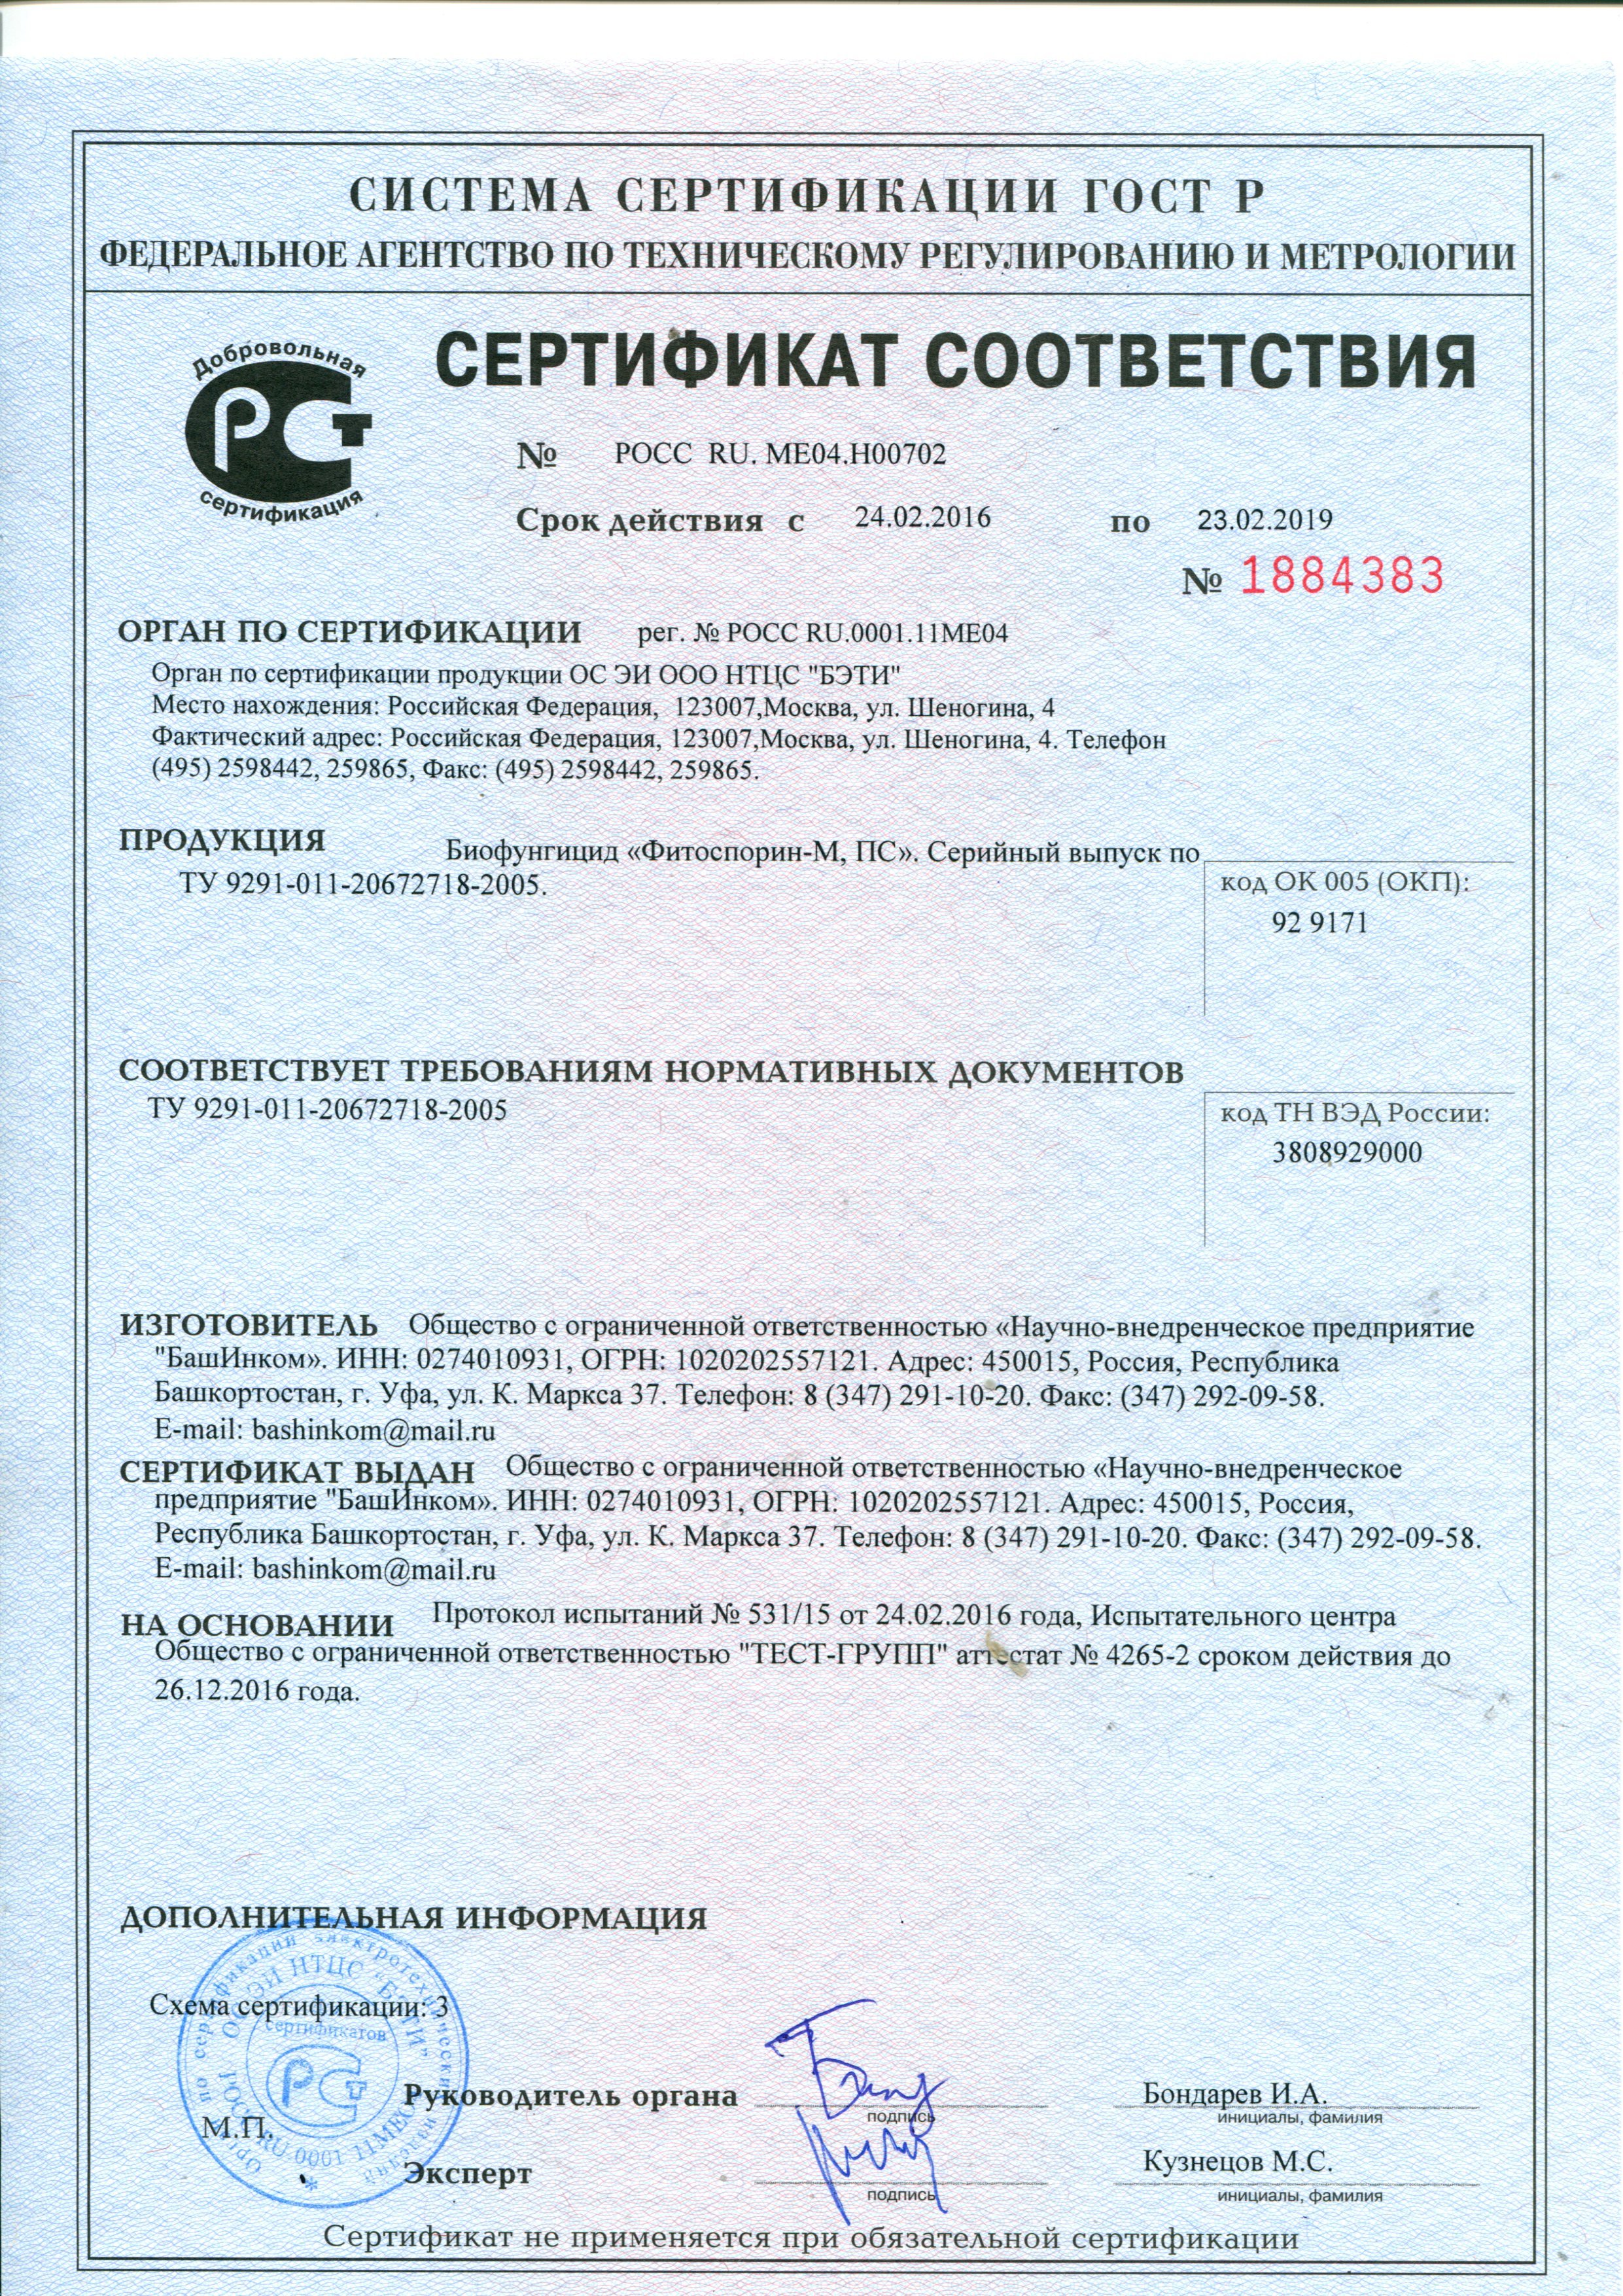 "Фитоспорин-М. ПС." Сертификат